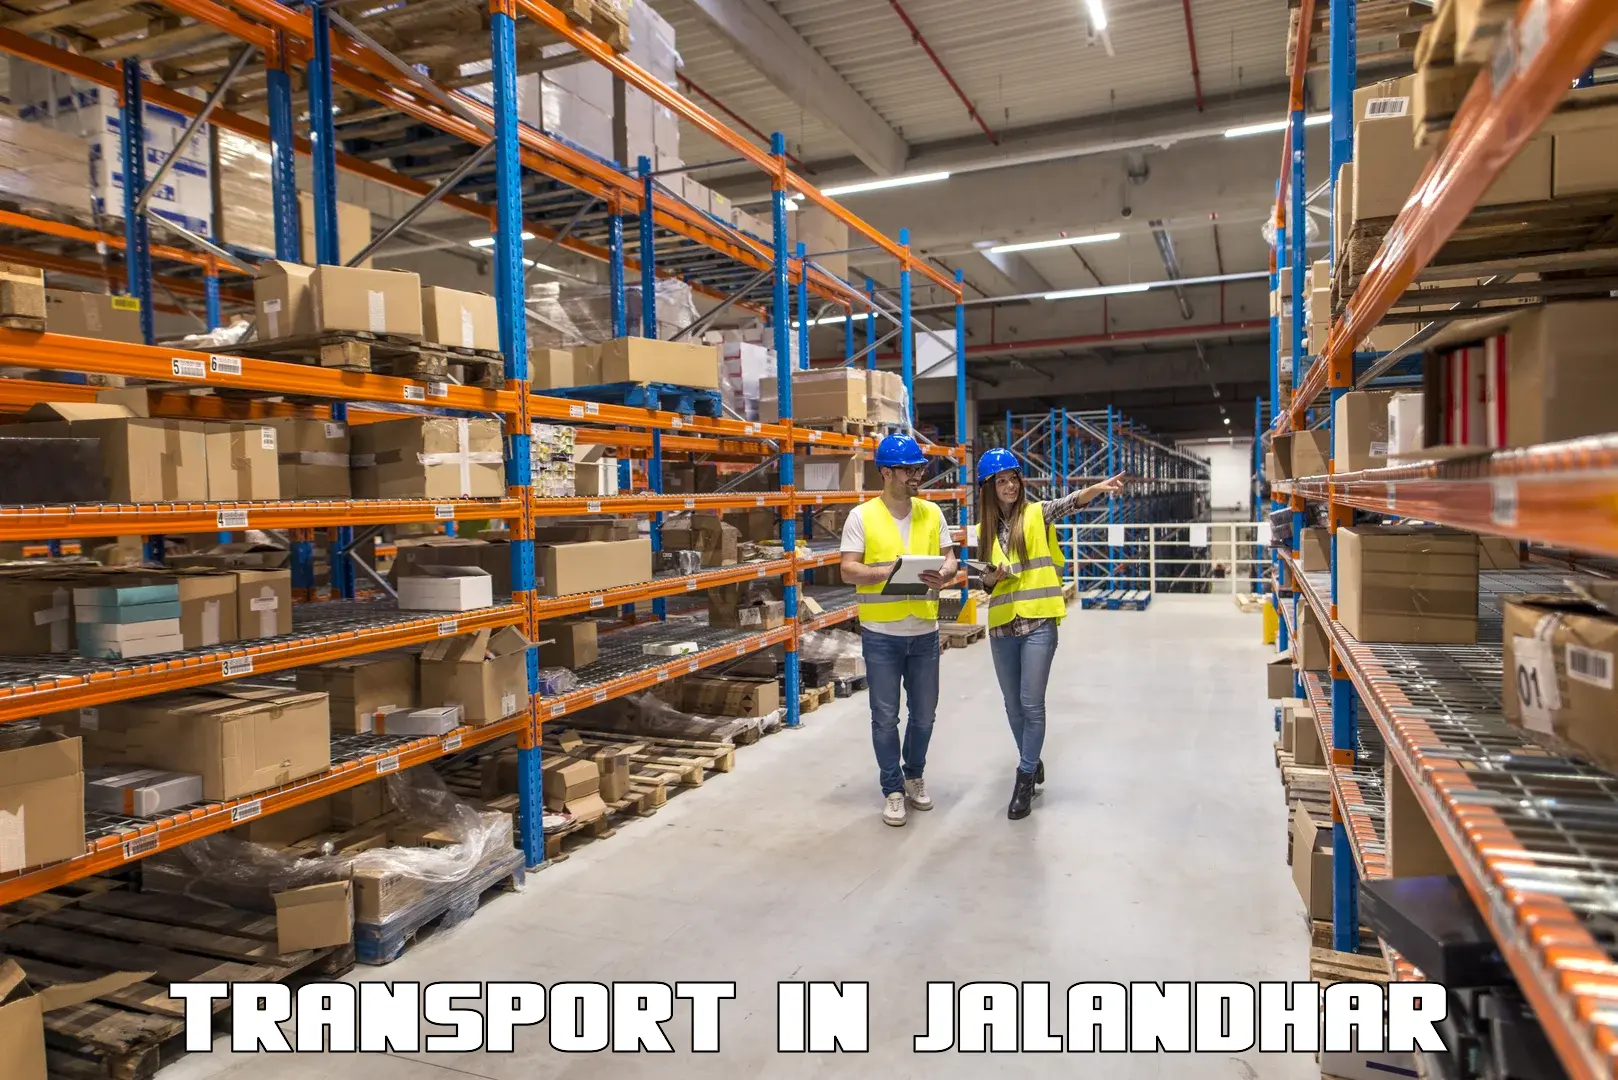 Cargo transport services in Jalandhar